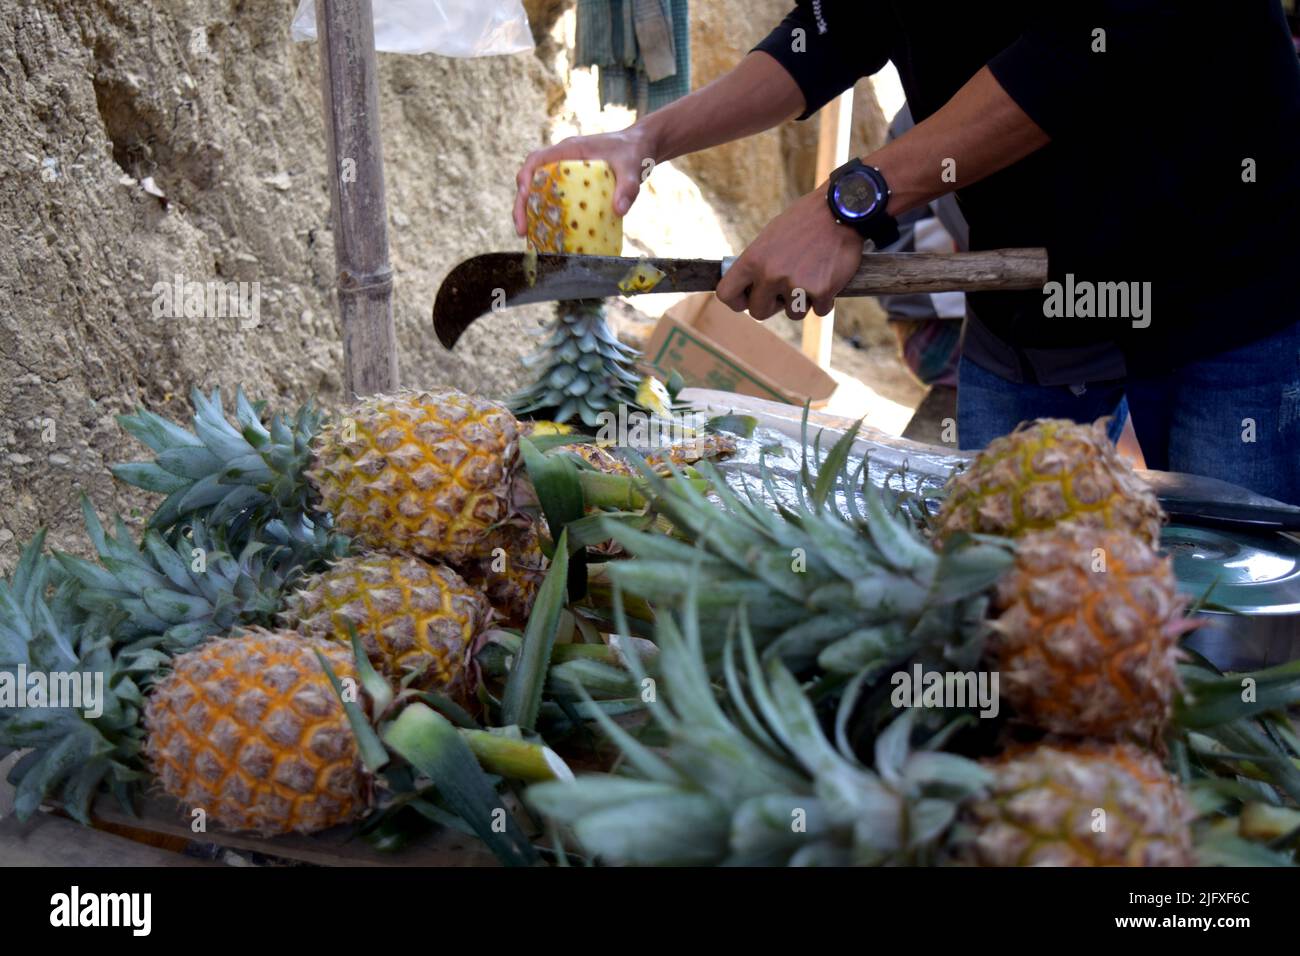 Die Ananas mit einem scharfen Messer schneiden. Gesunde Früchte für die menschliche Gesundheit. Tropische Früchte im Hügeltrakt. HIL-Tract Ananasernte Stockfoto